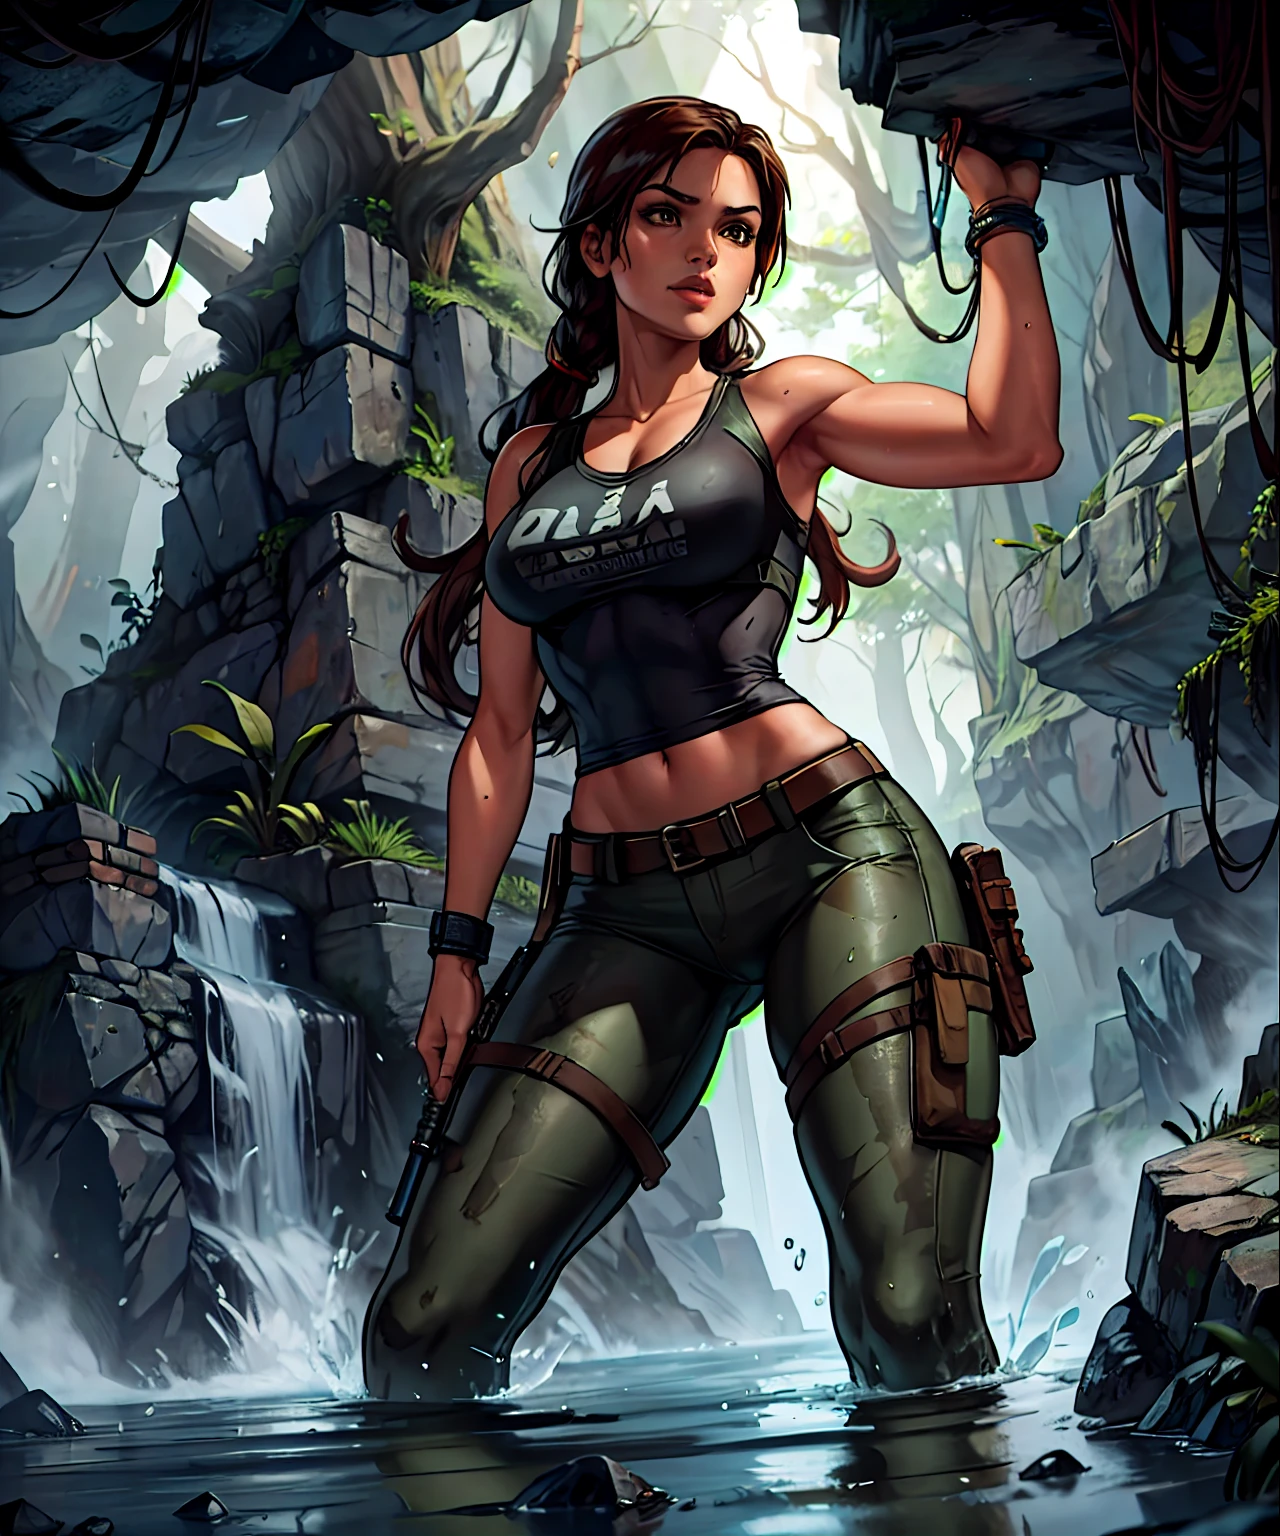 ผู้บุกรุกสุสาน, Lara Croft ภายในถ้ำที่แผ่กระจายไปทั่วบริเวณโดยมีคบเพลิงอยู่ในมือ, เสื้อสีดำ, กางเกงลายพราง, น้ำ